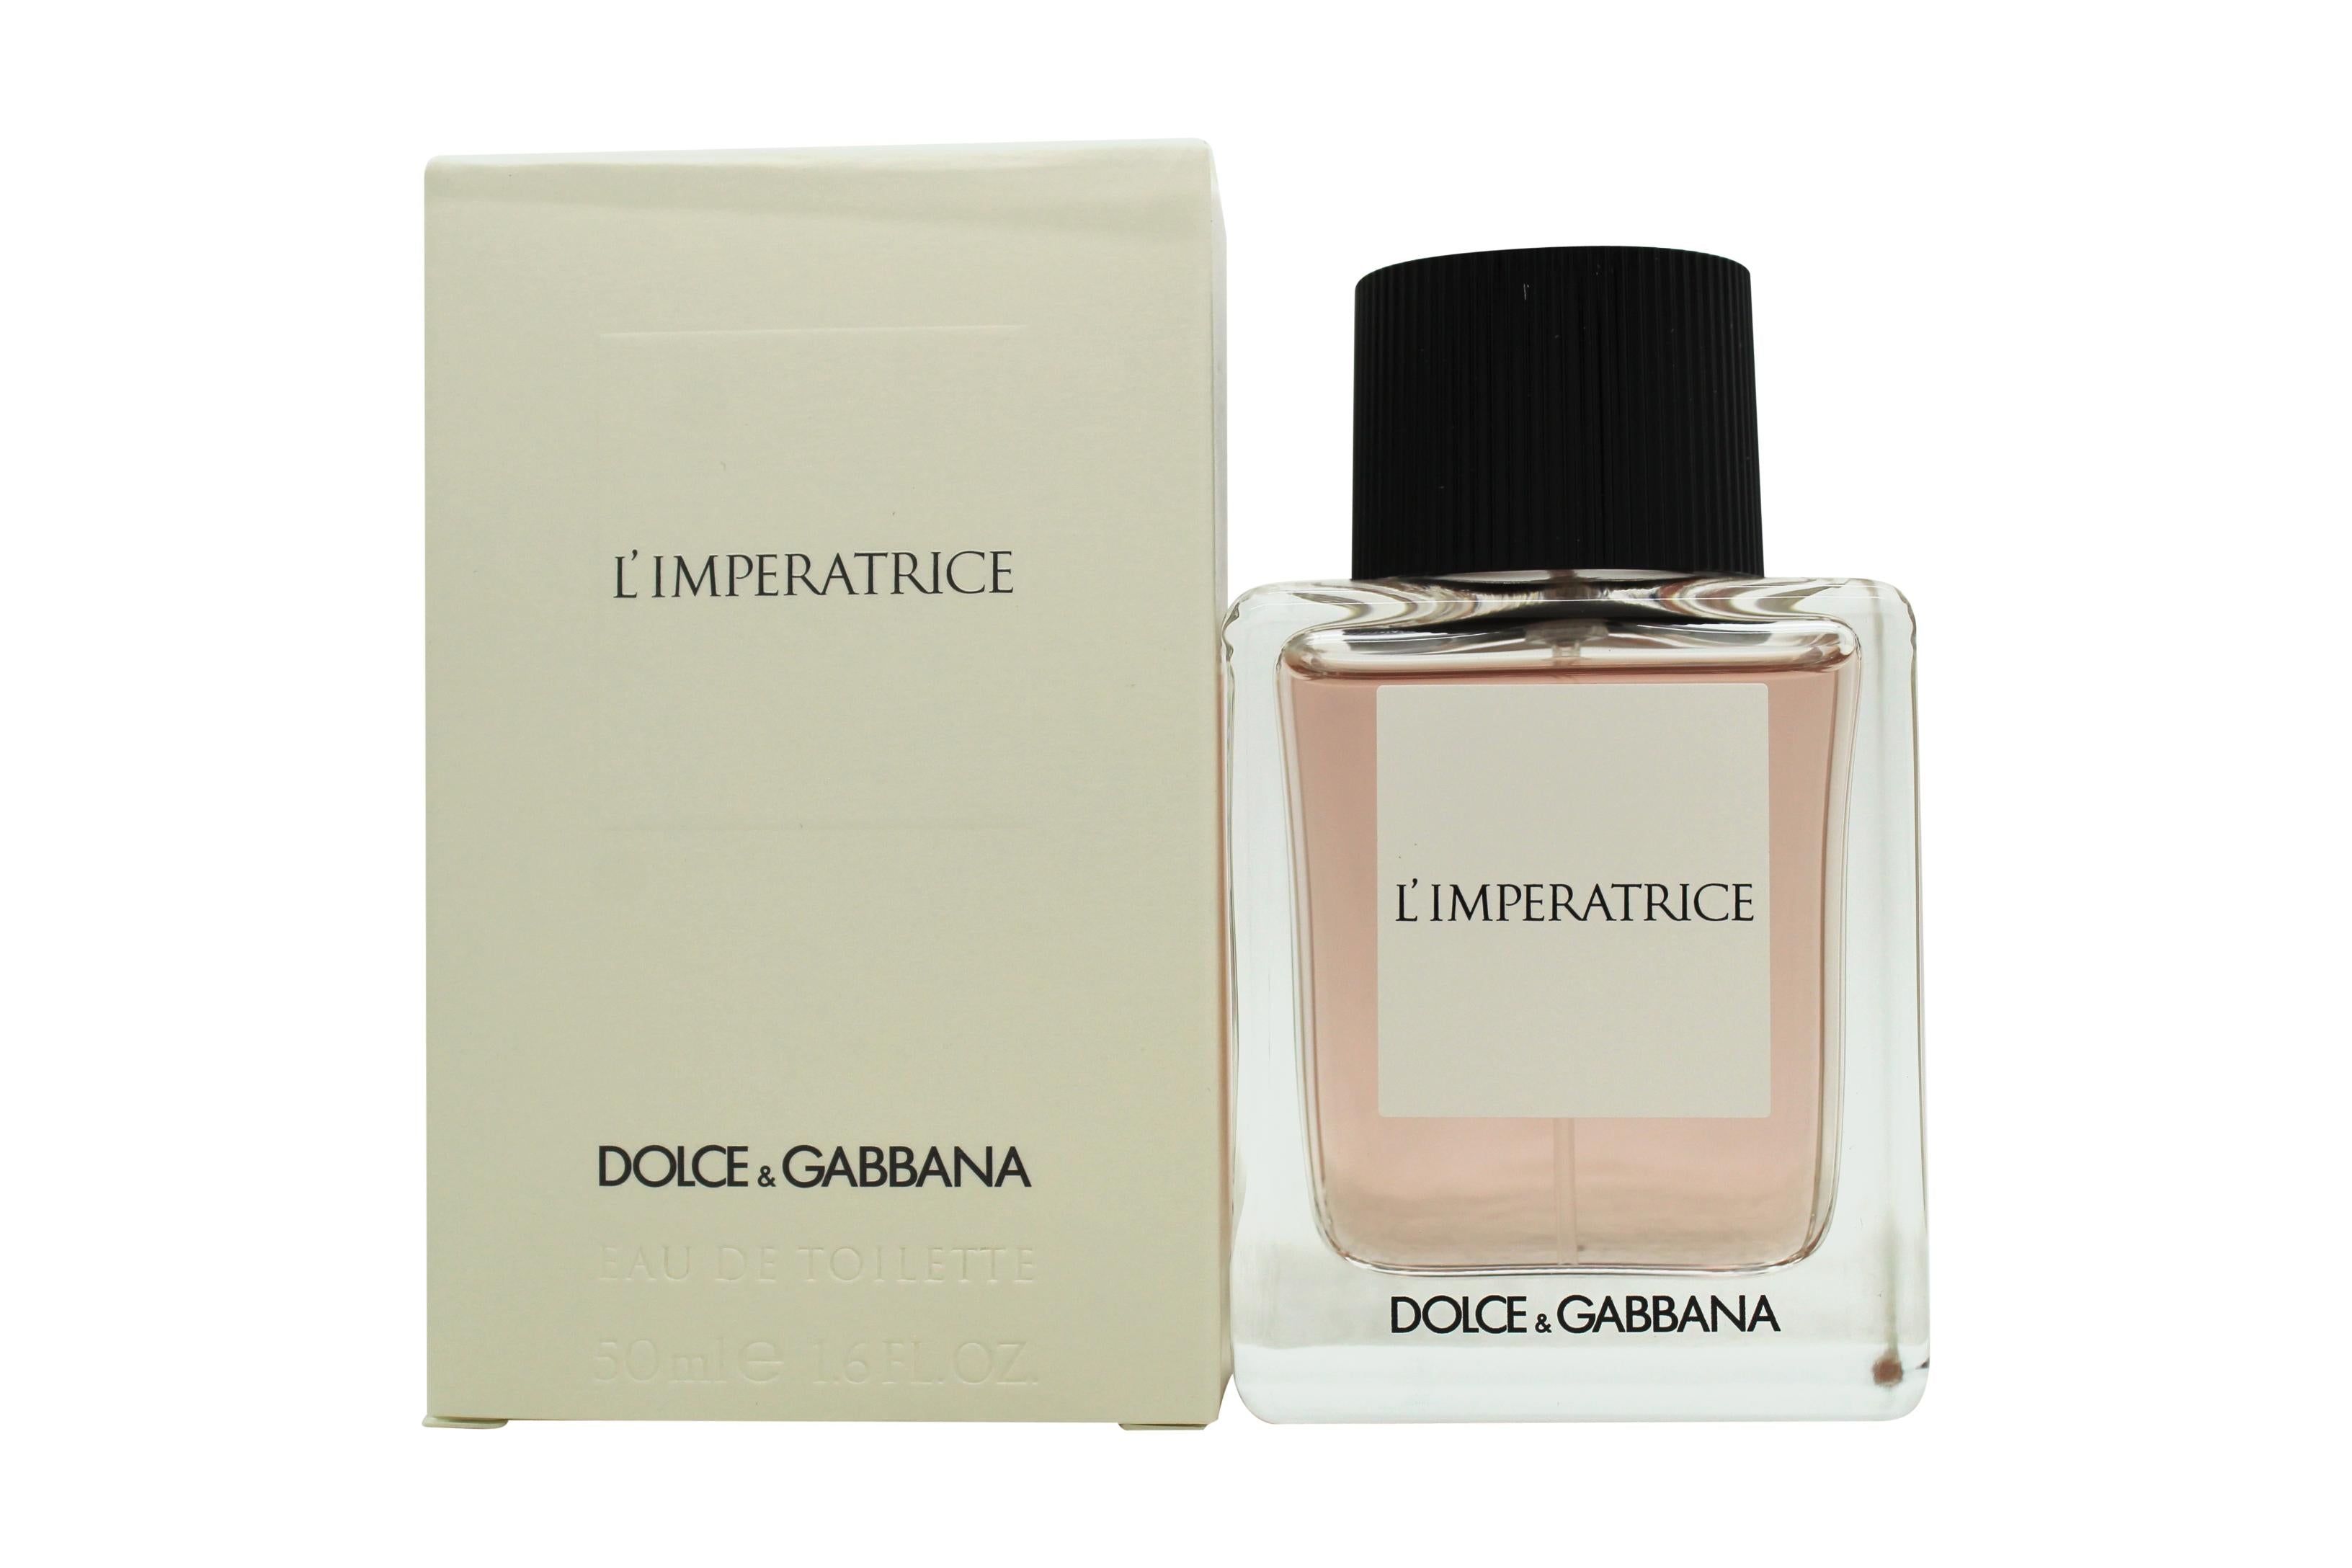 View Dolce Gabbana DG LImperatrice Eau de Toilette 50ml Spray information